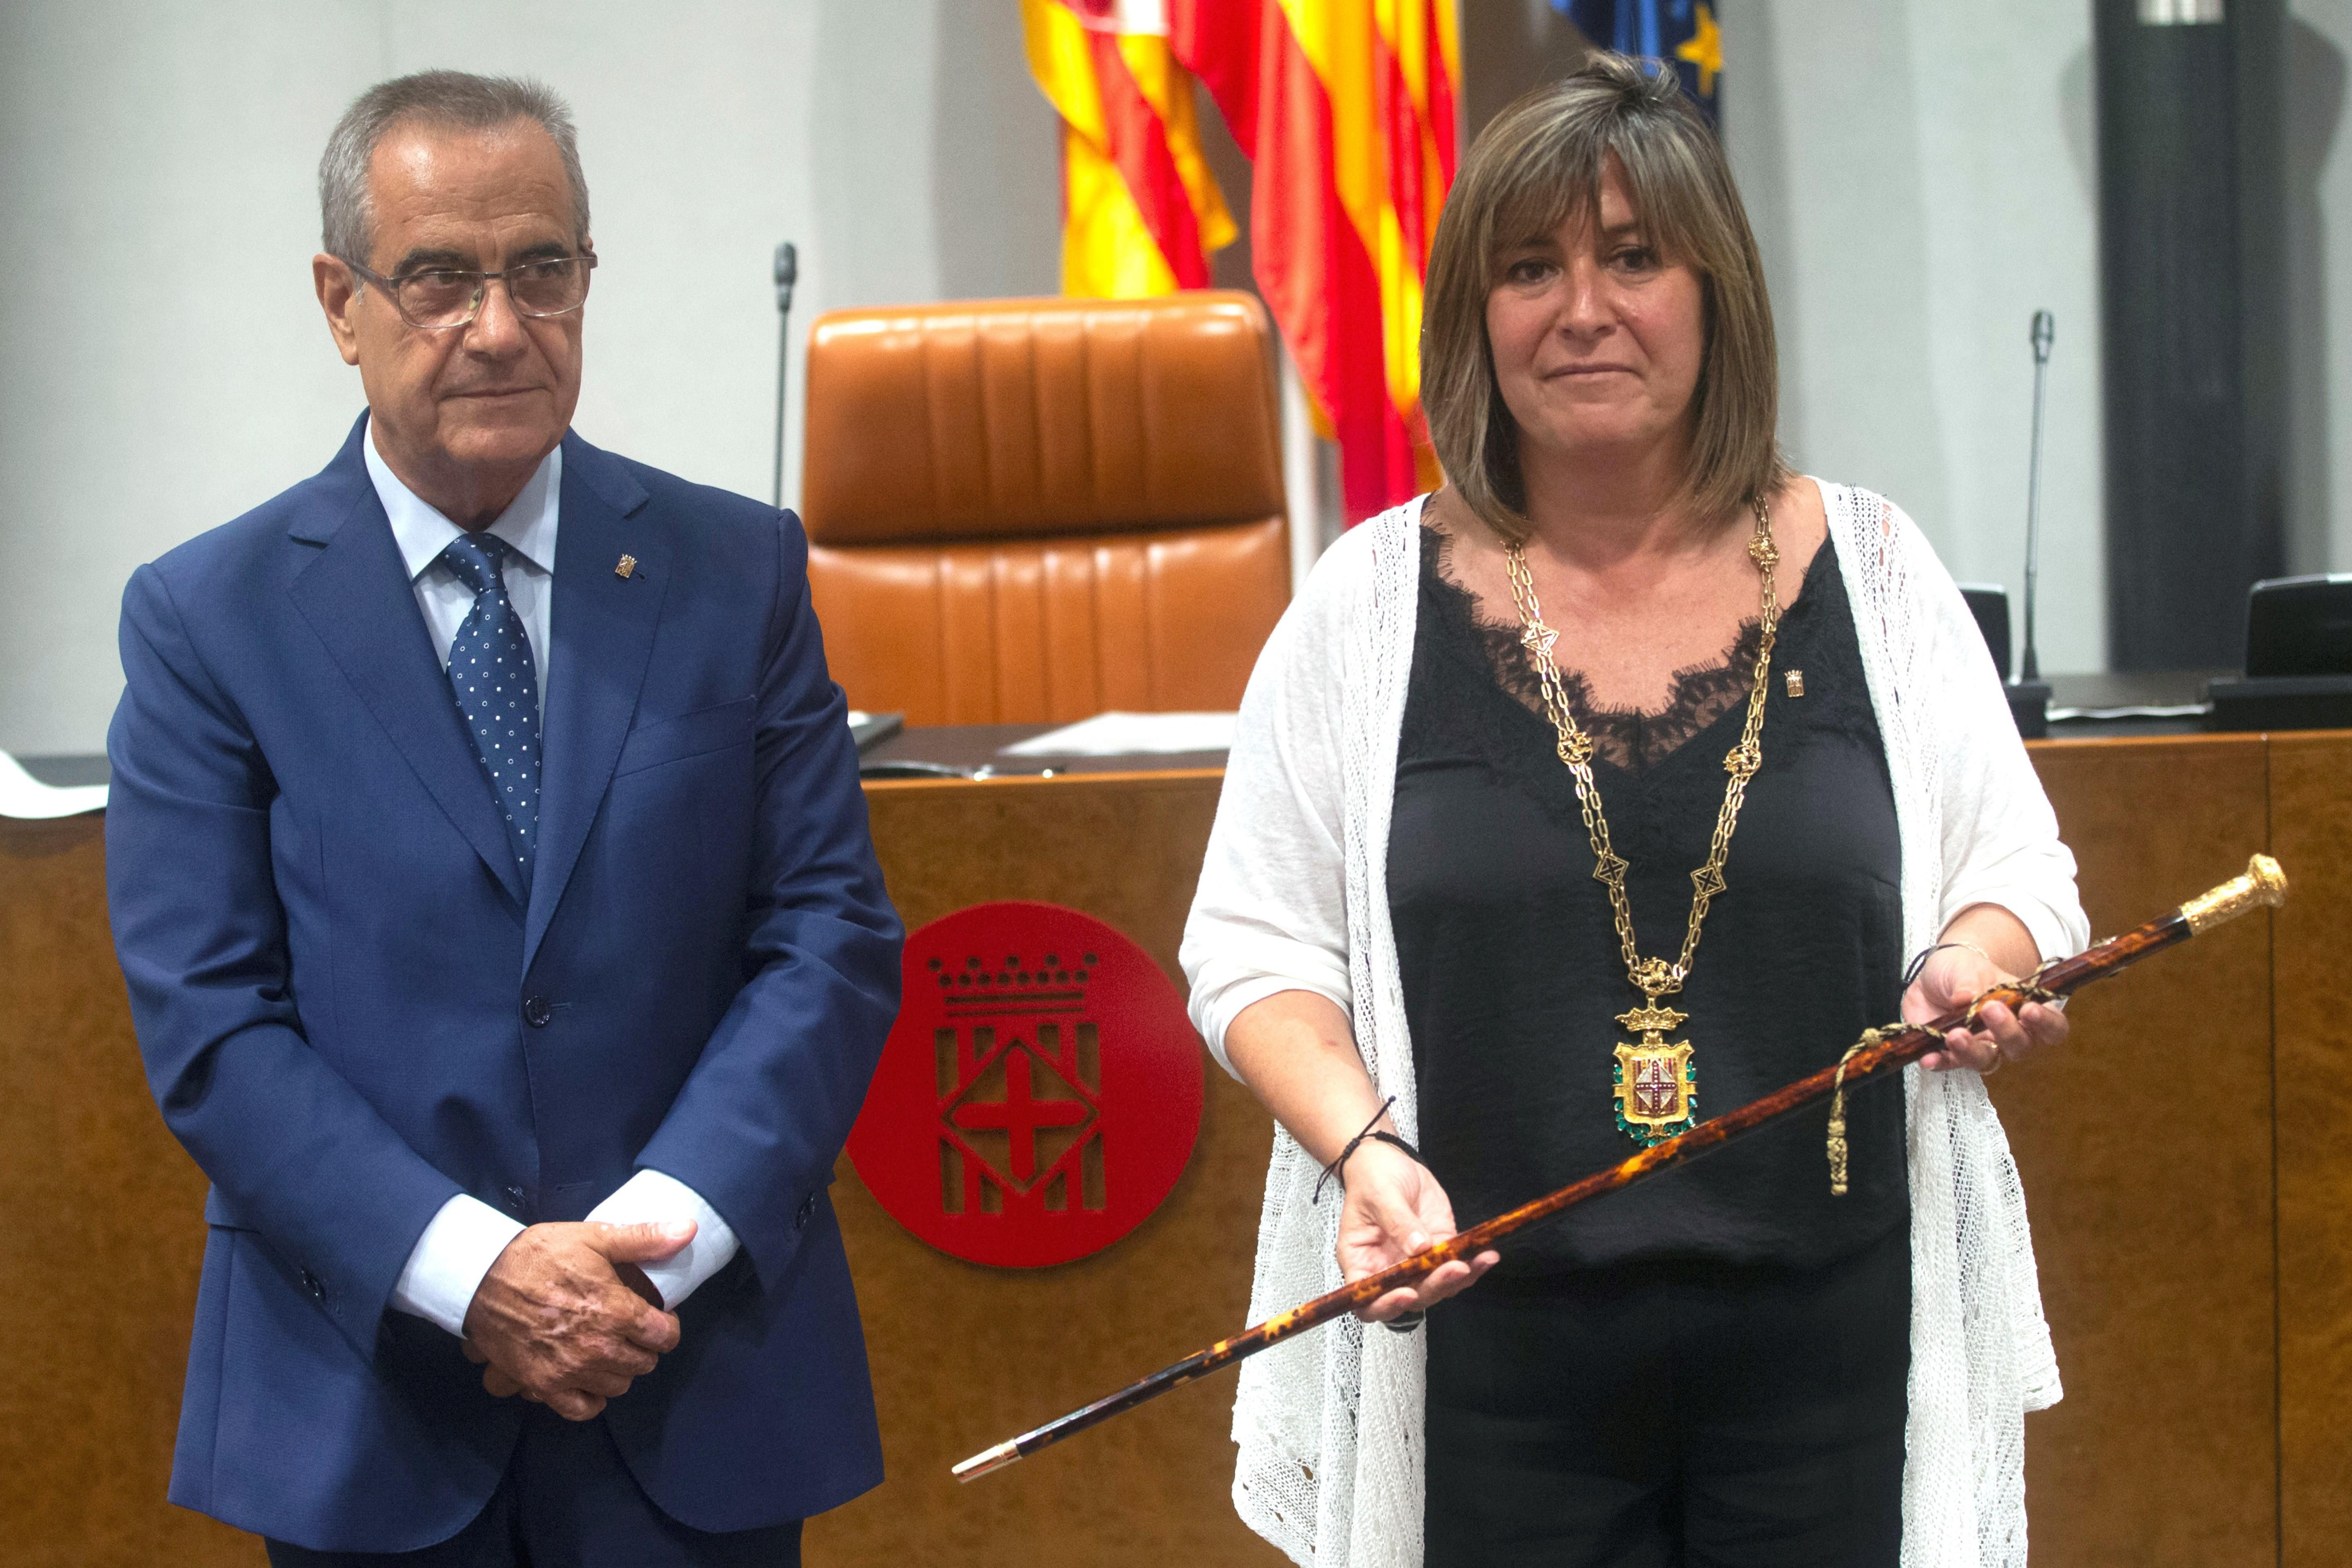 La alcaldesa de L'Hospitalet de Llobregat, Núria Marín, sostiene la vara de mando junto al diputado provincial Celestino Corbacho durante el acto de constitución de la Diputación de Barcelona